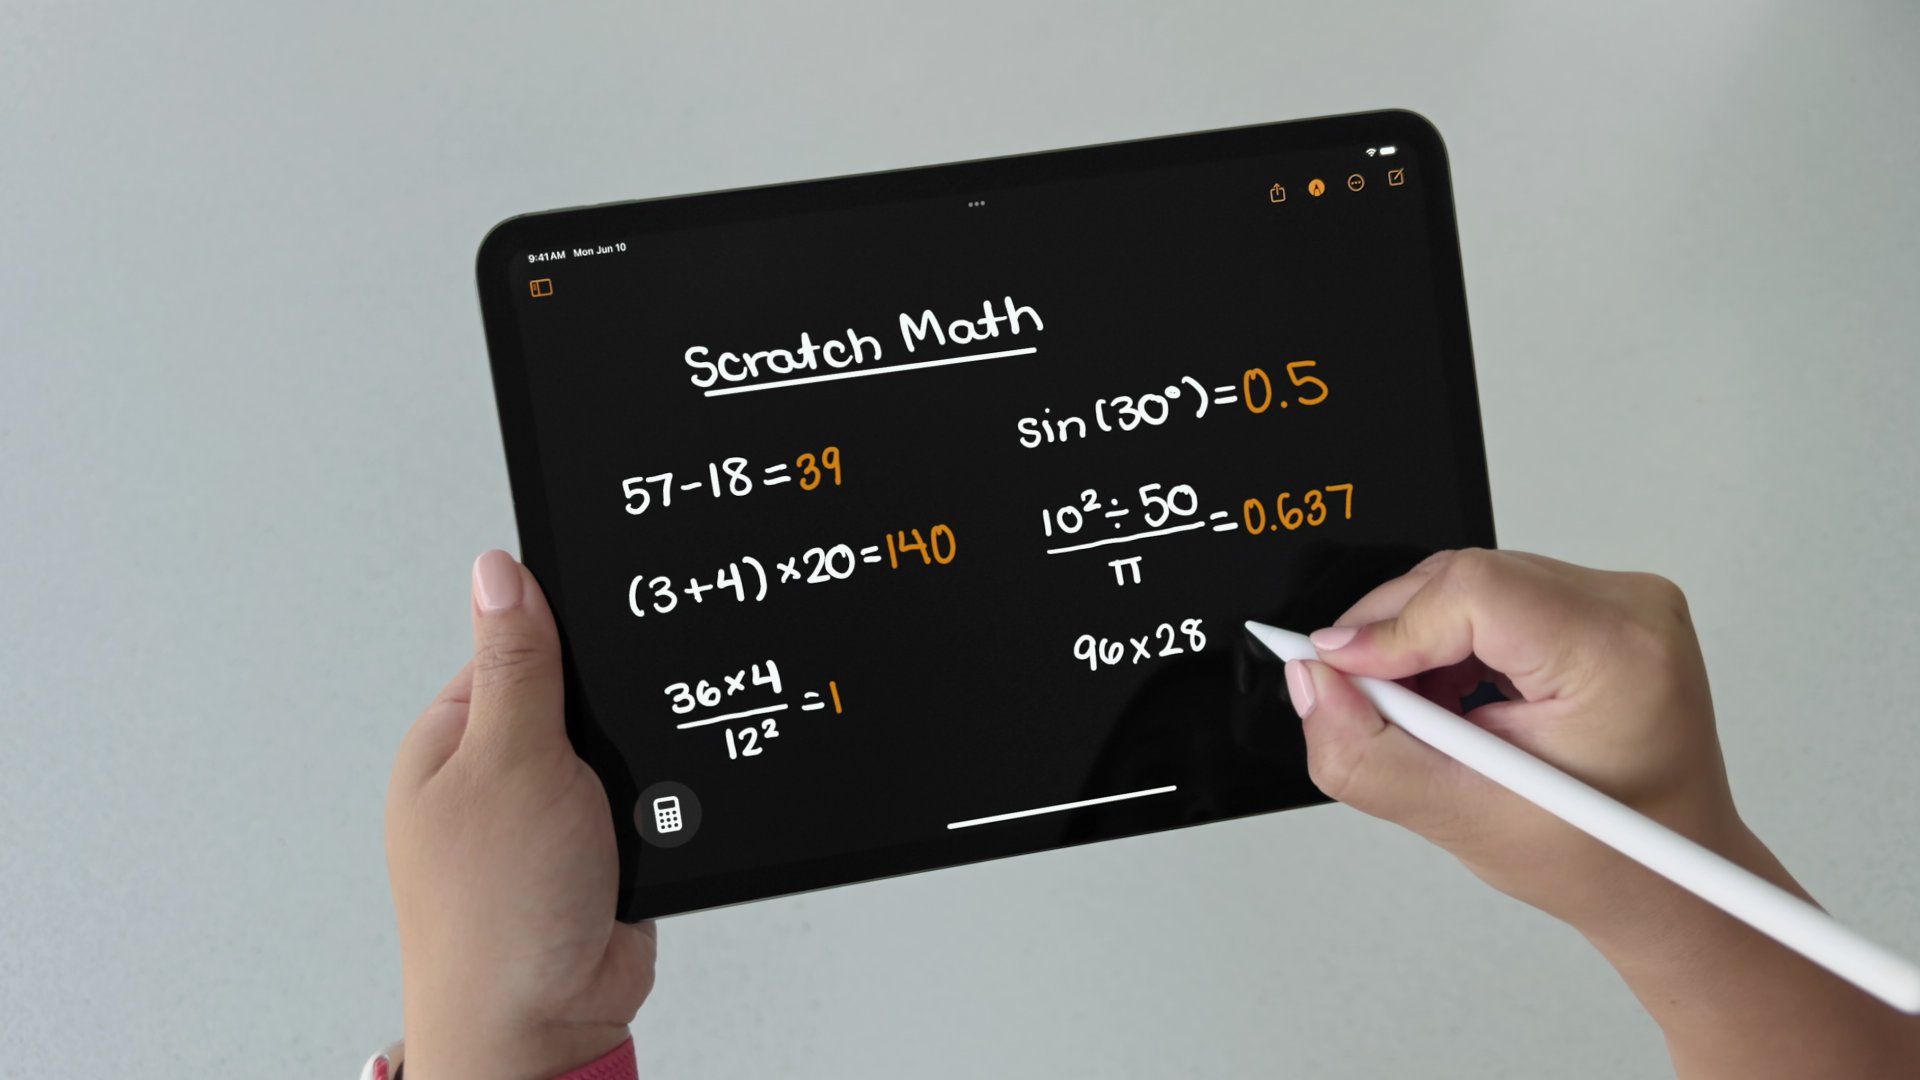 มาทั้งที ไม่มีน้อยหน้า ! เครื่องคิดเลขบน iPad มาแล้วกับ iPadOS 18 พร้อมฟีเจอร์ Math Notes เขียนปุ๊บ แก้สมการปั๊บ